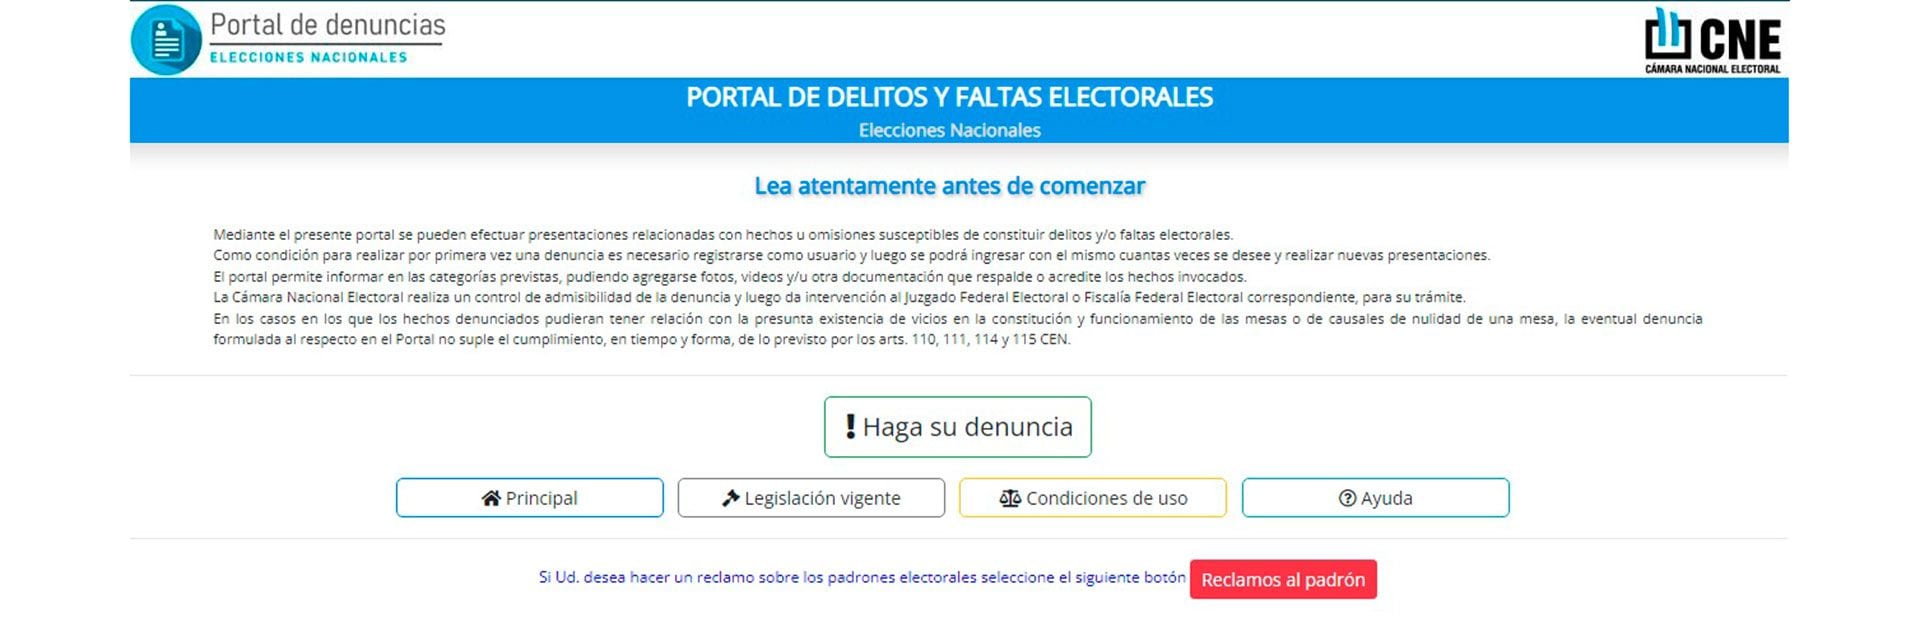 Irregularidades infracciones electorales CNE portal de denuncias